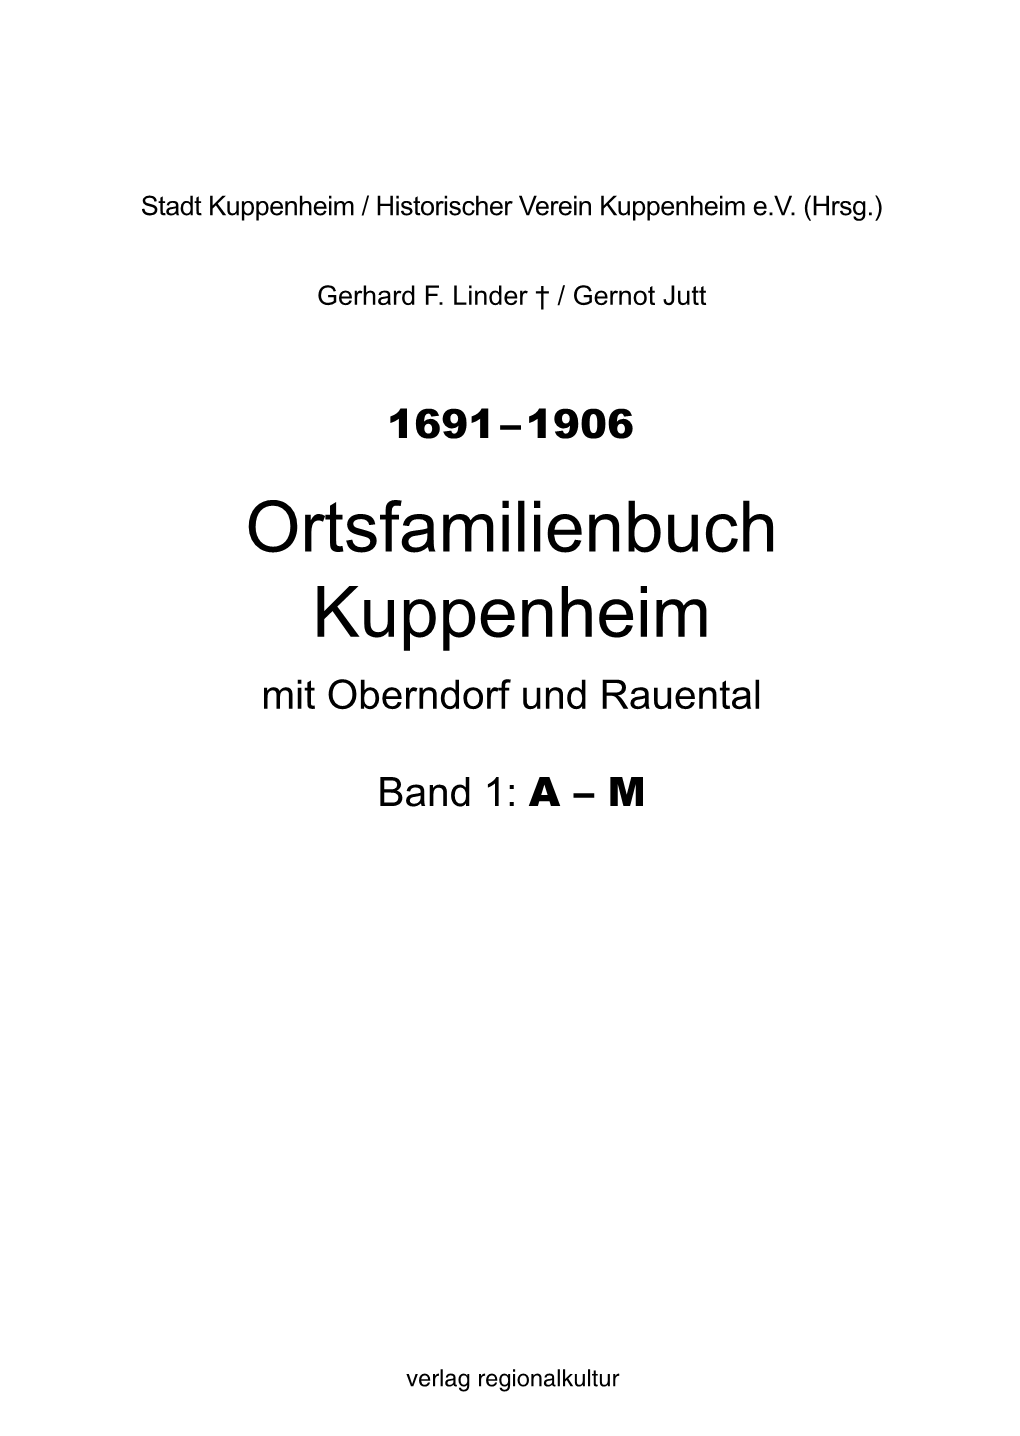 Ortsfamilienbuch Kuppenheim Mit Oberndorf Und Rauental